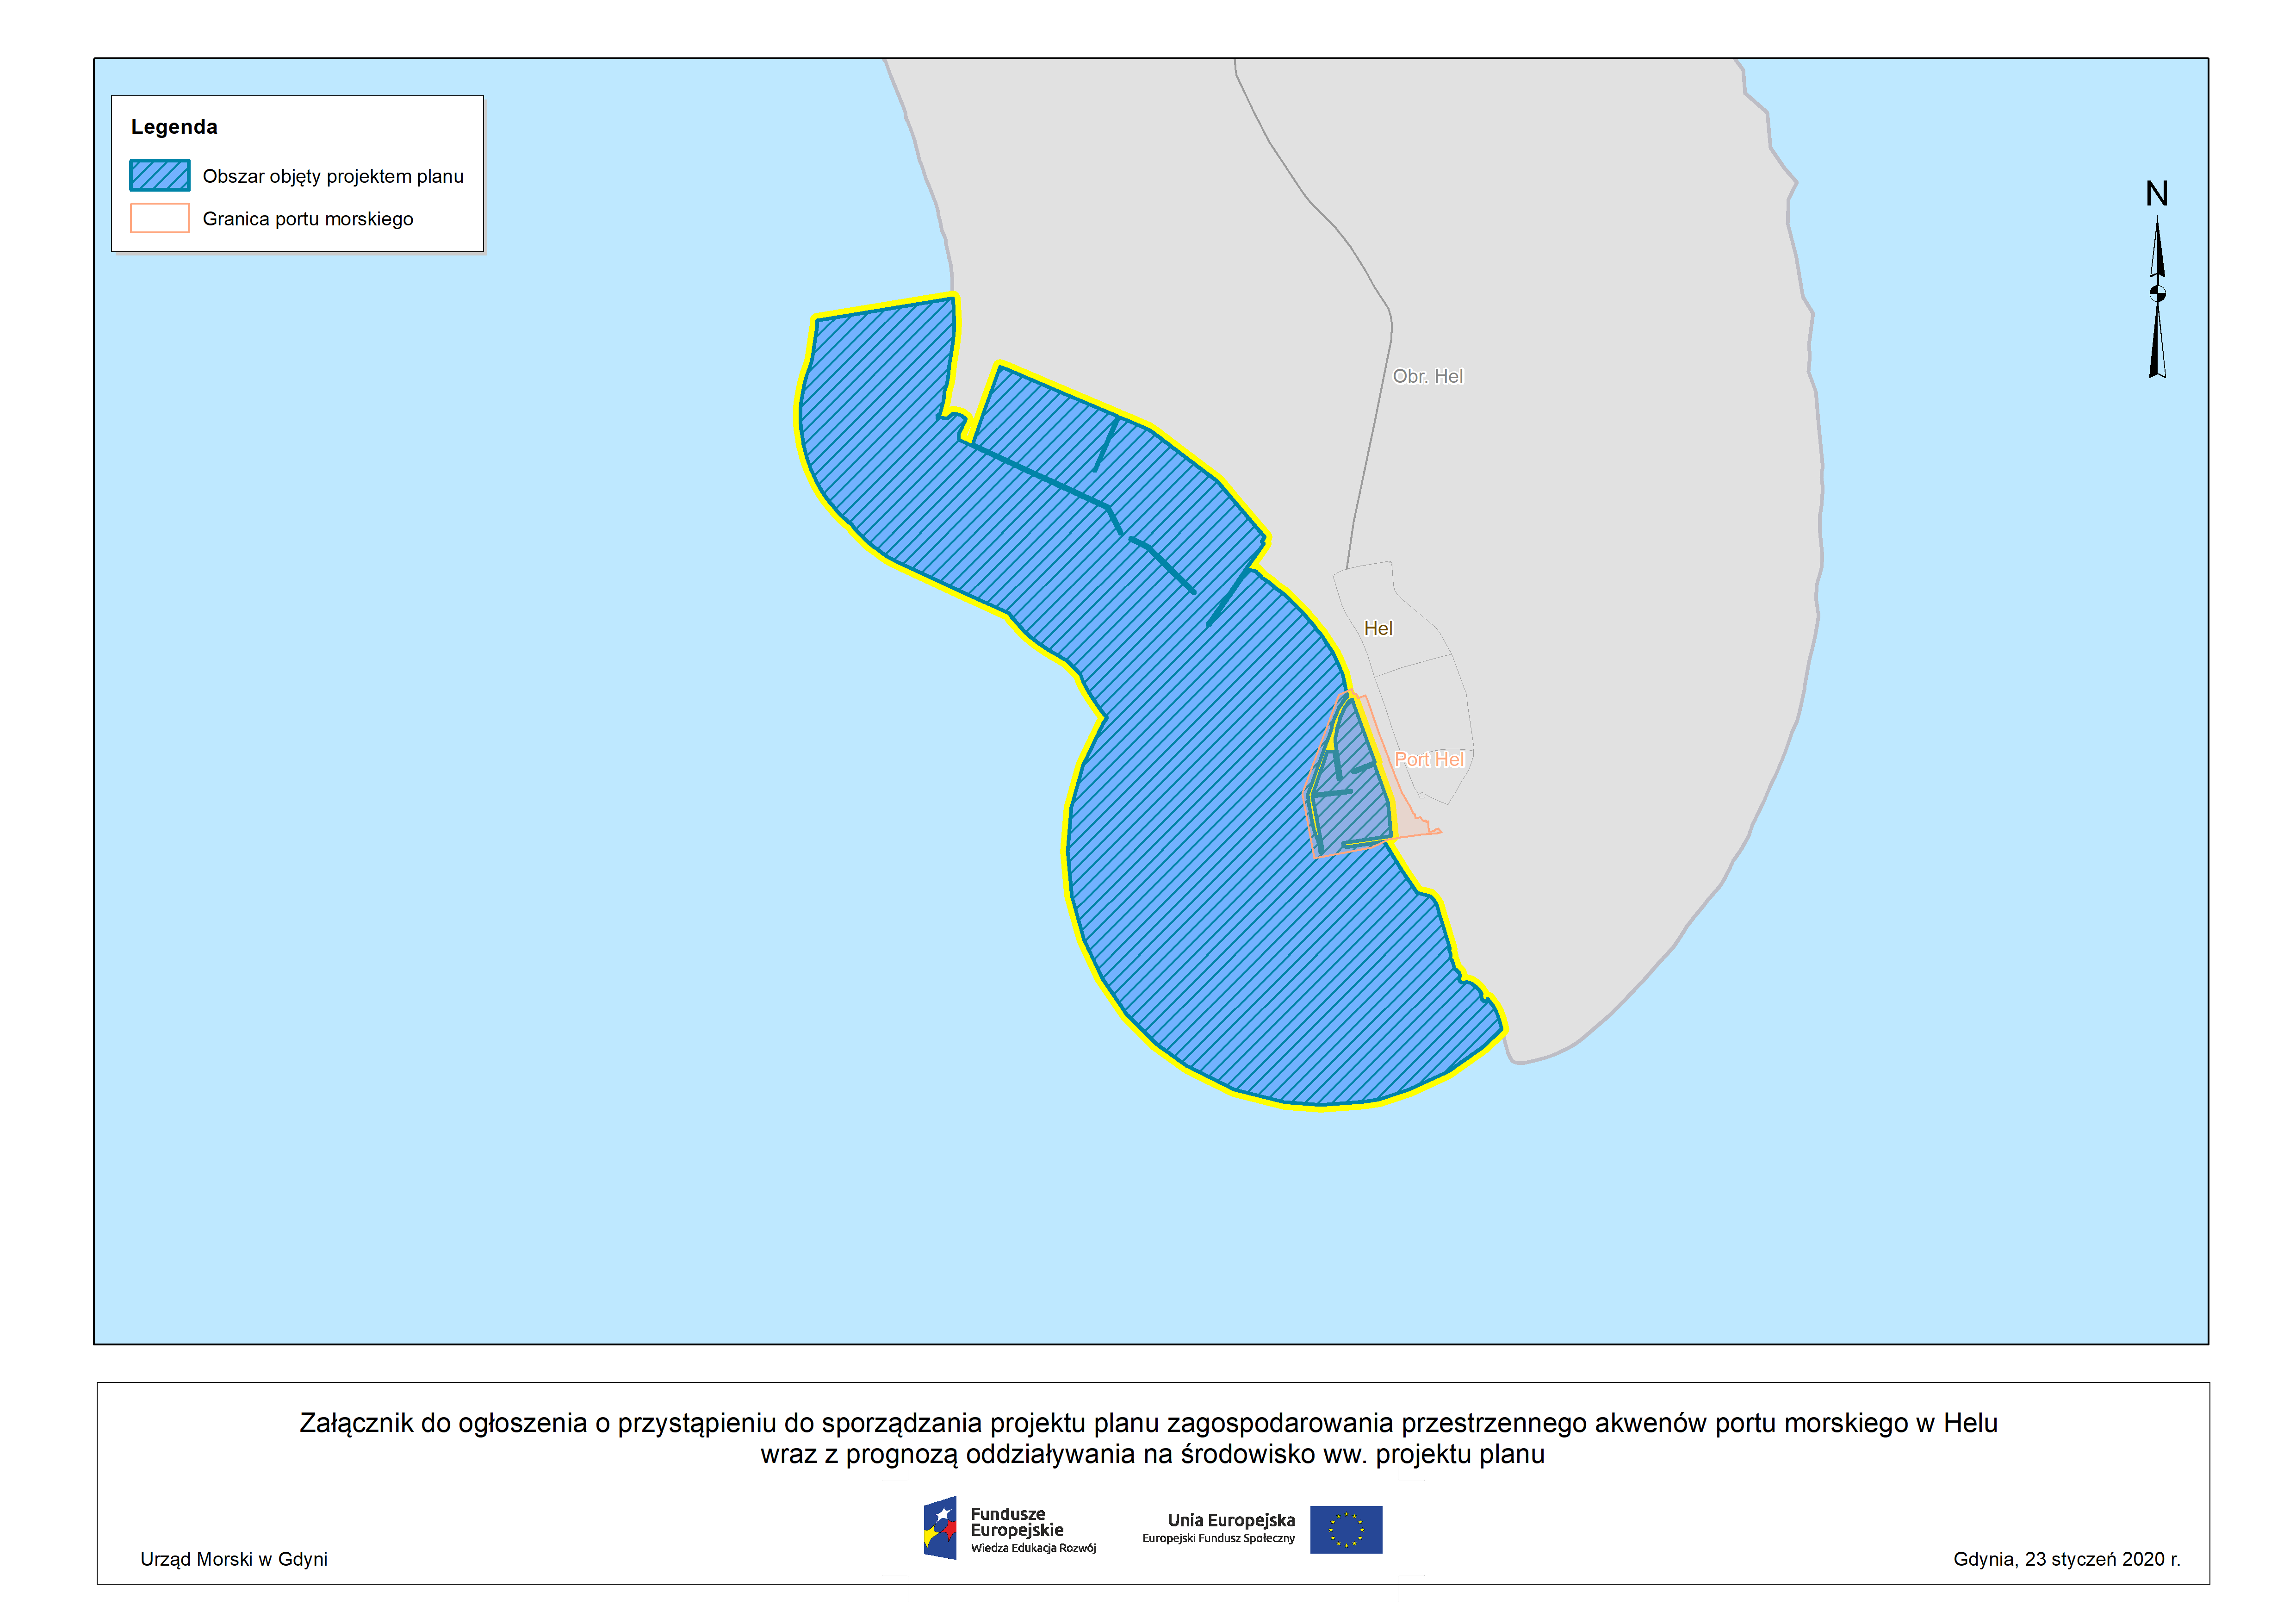 Ogłoszenie o przystąpieniu do sporządzania projektu planu zagospodarowania przestrzennego akwenów portu morskiego w Hel